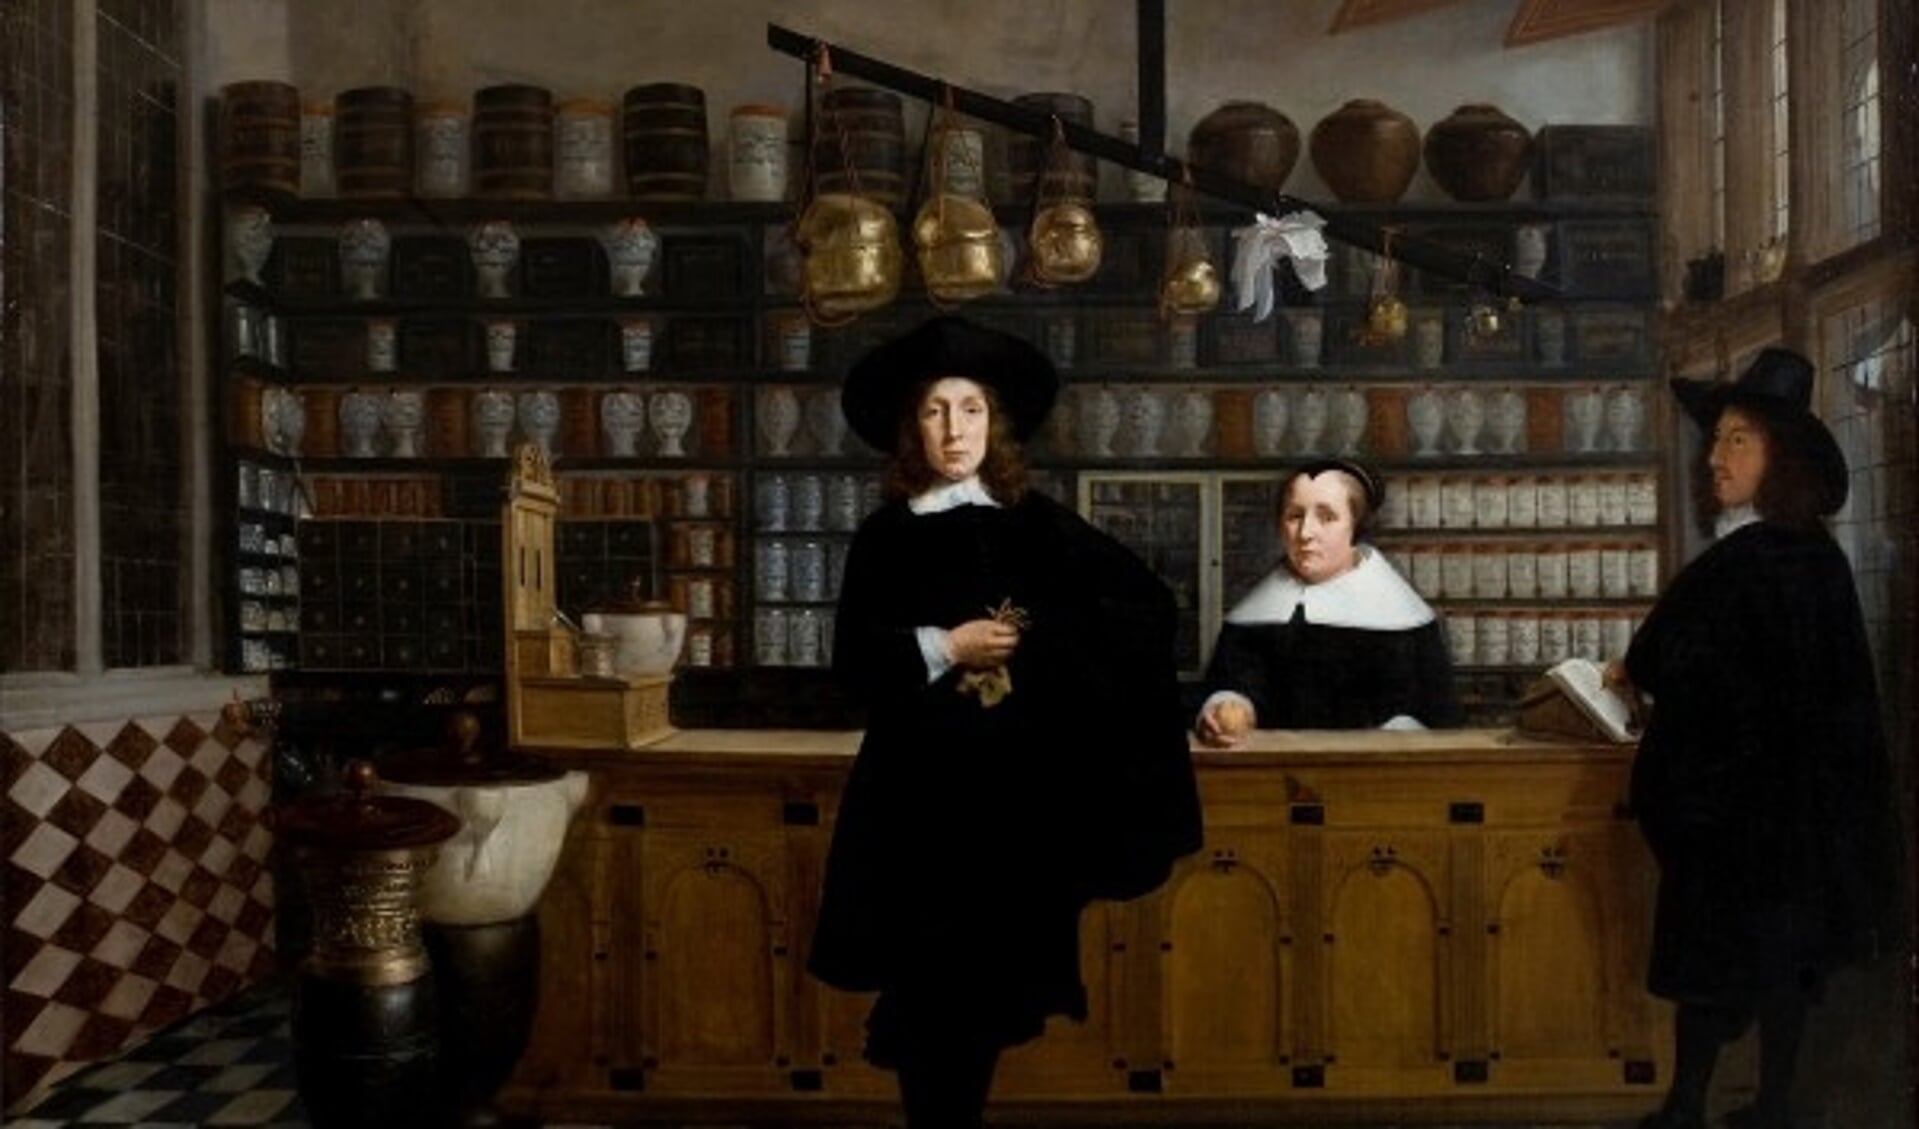 Apothekerswinkel in 1686